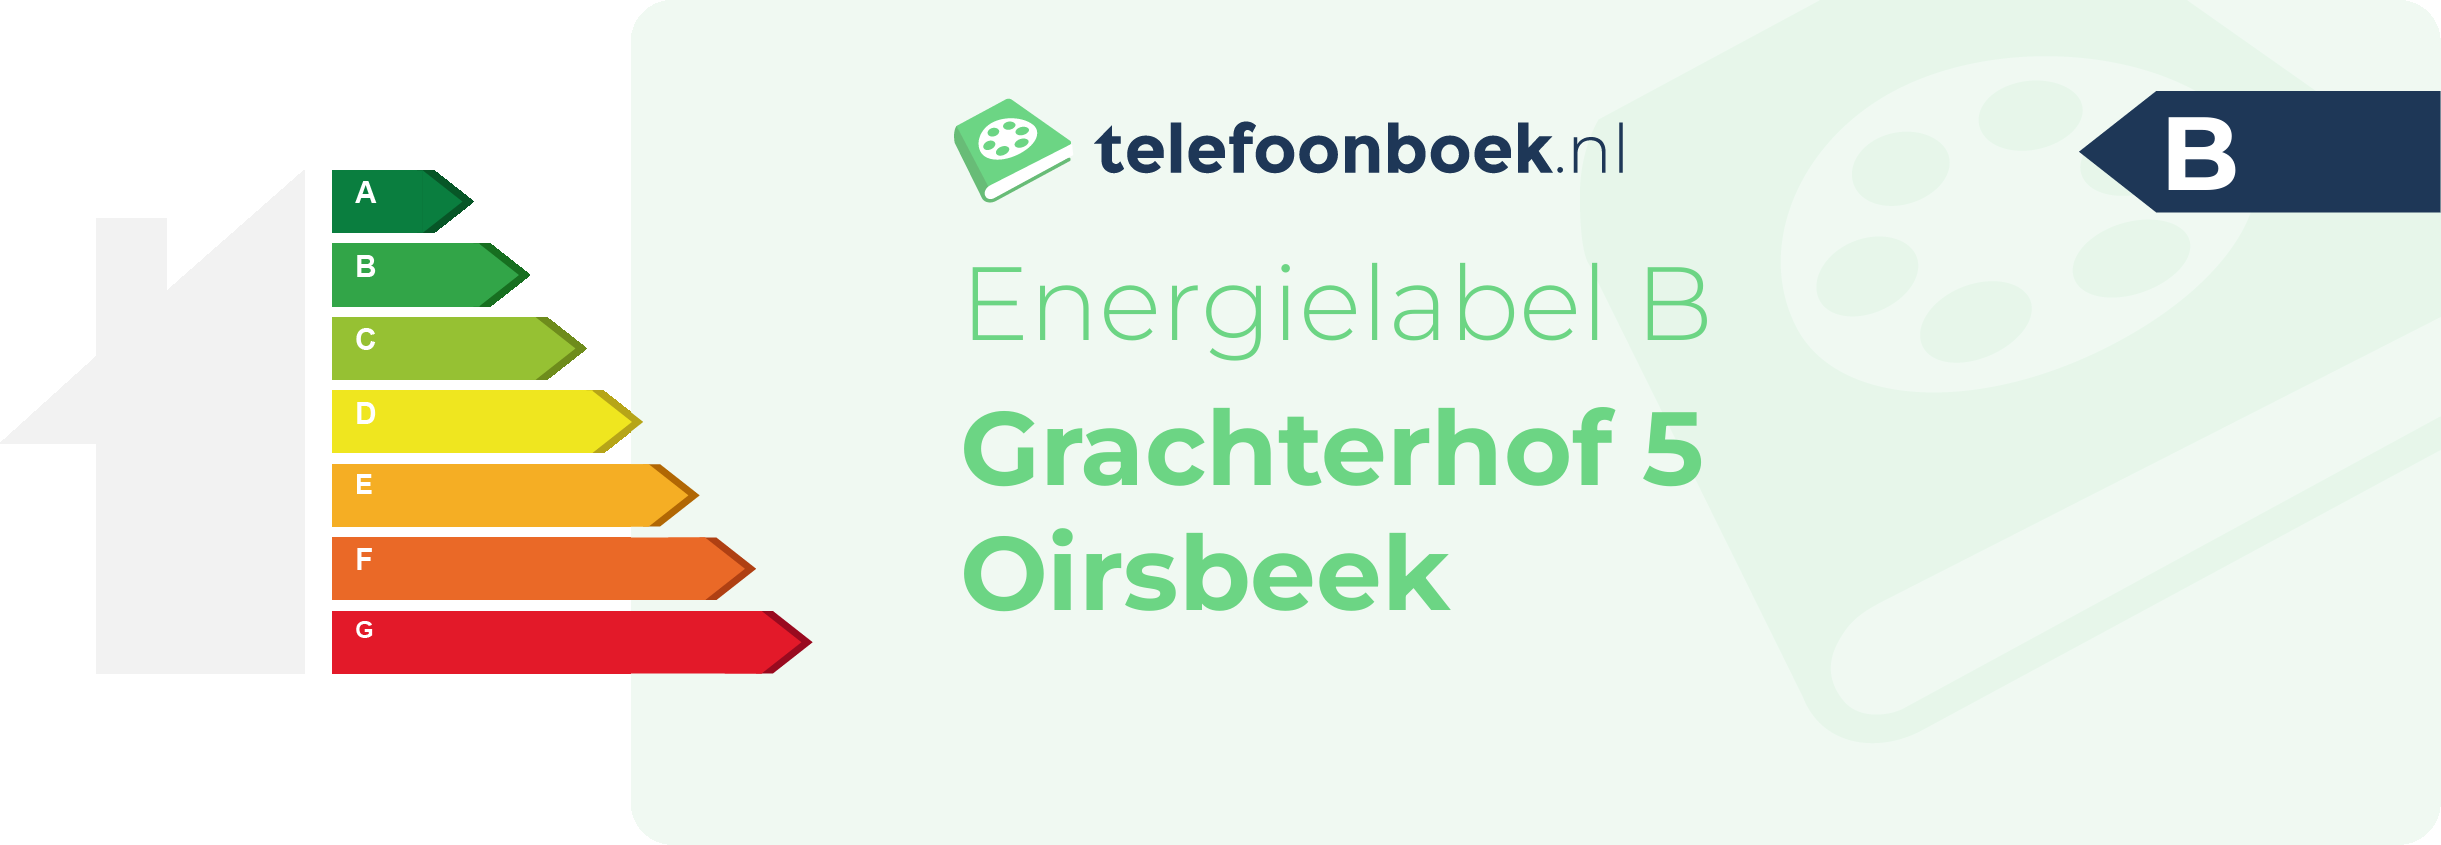 Energielabel Grachterhof 5 Oirsbeek